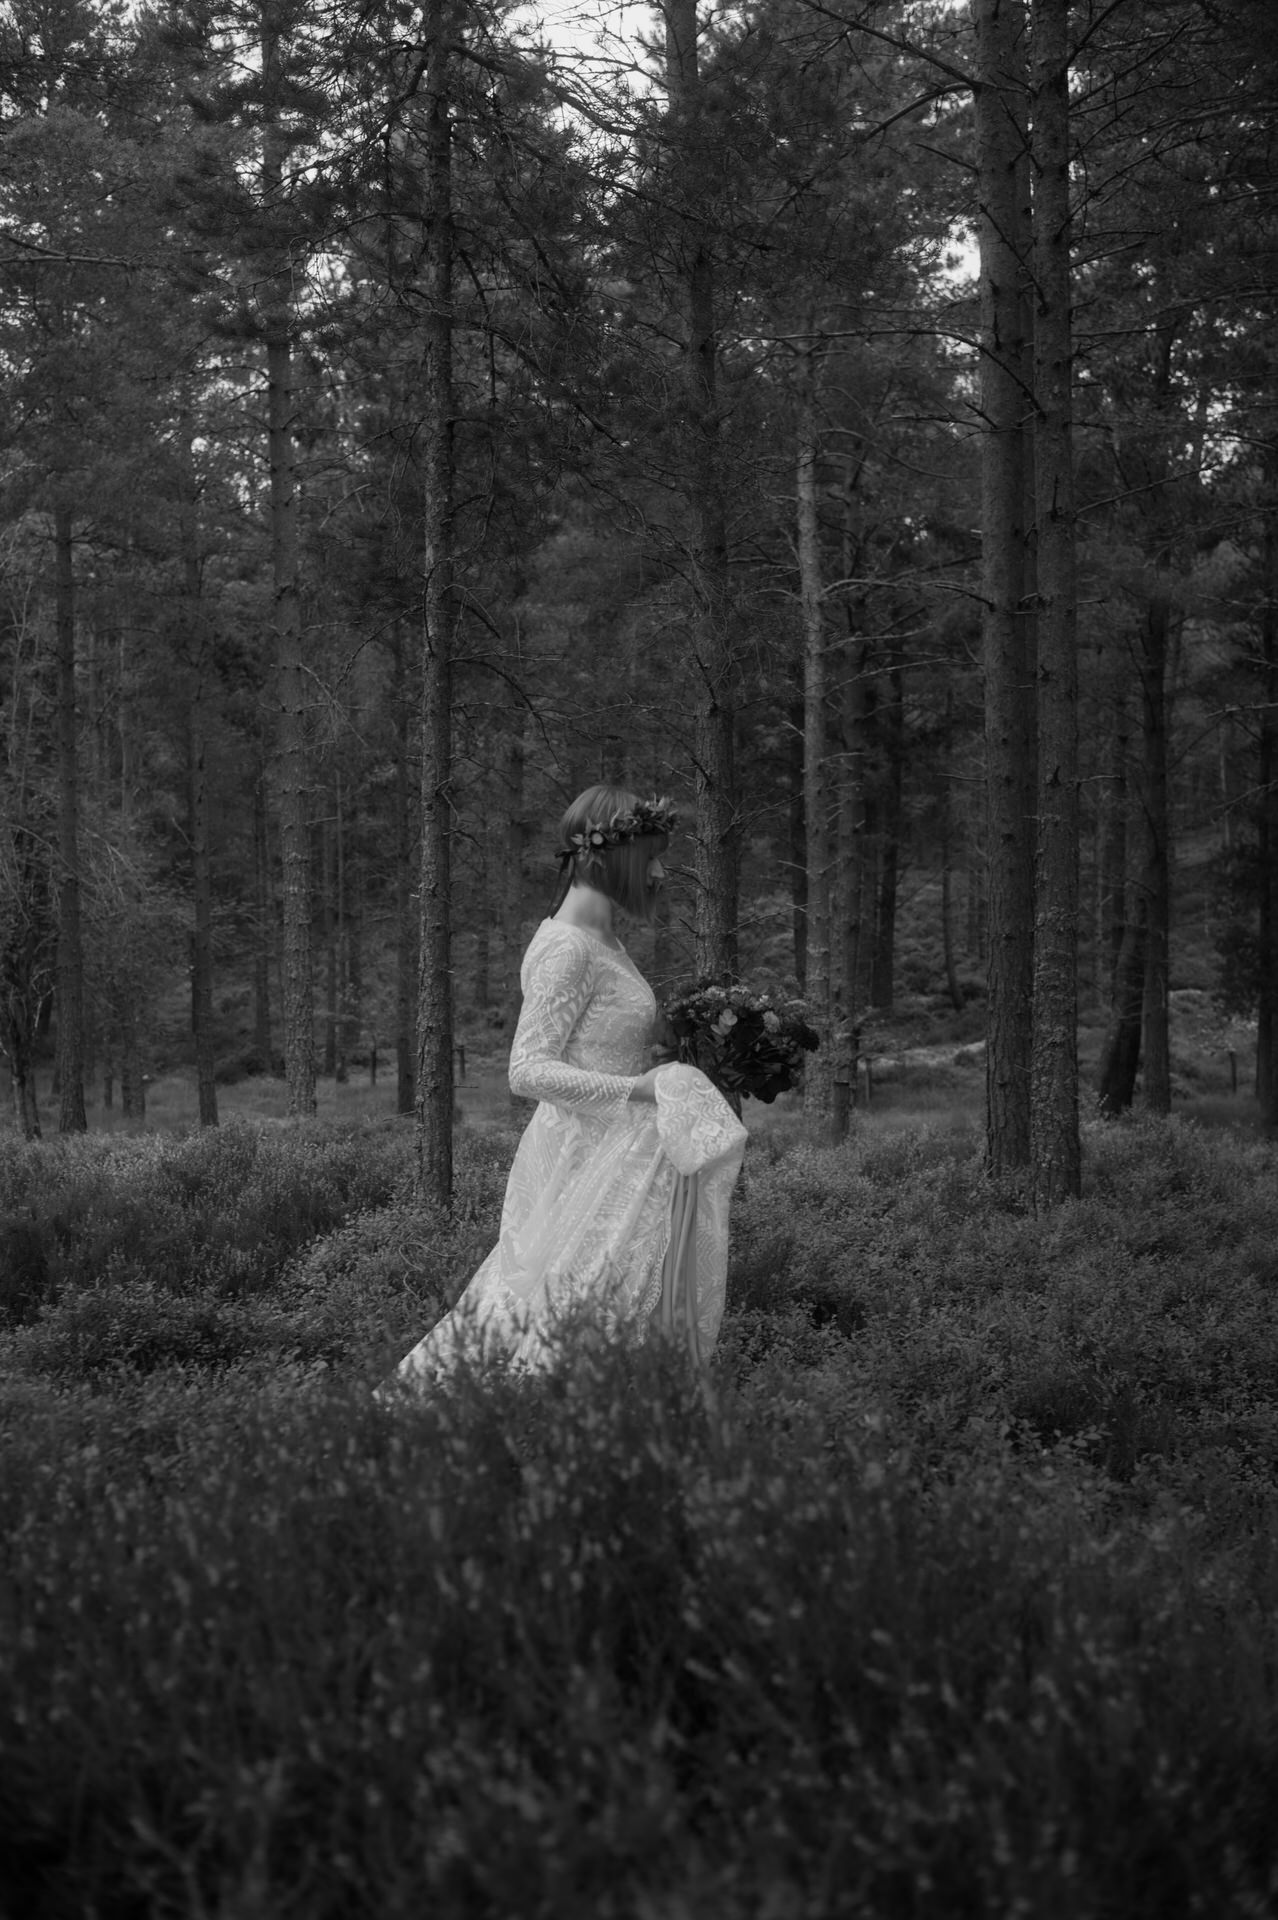 Bride in White dress walking through woodland in Scotland Highlands